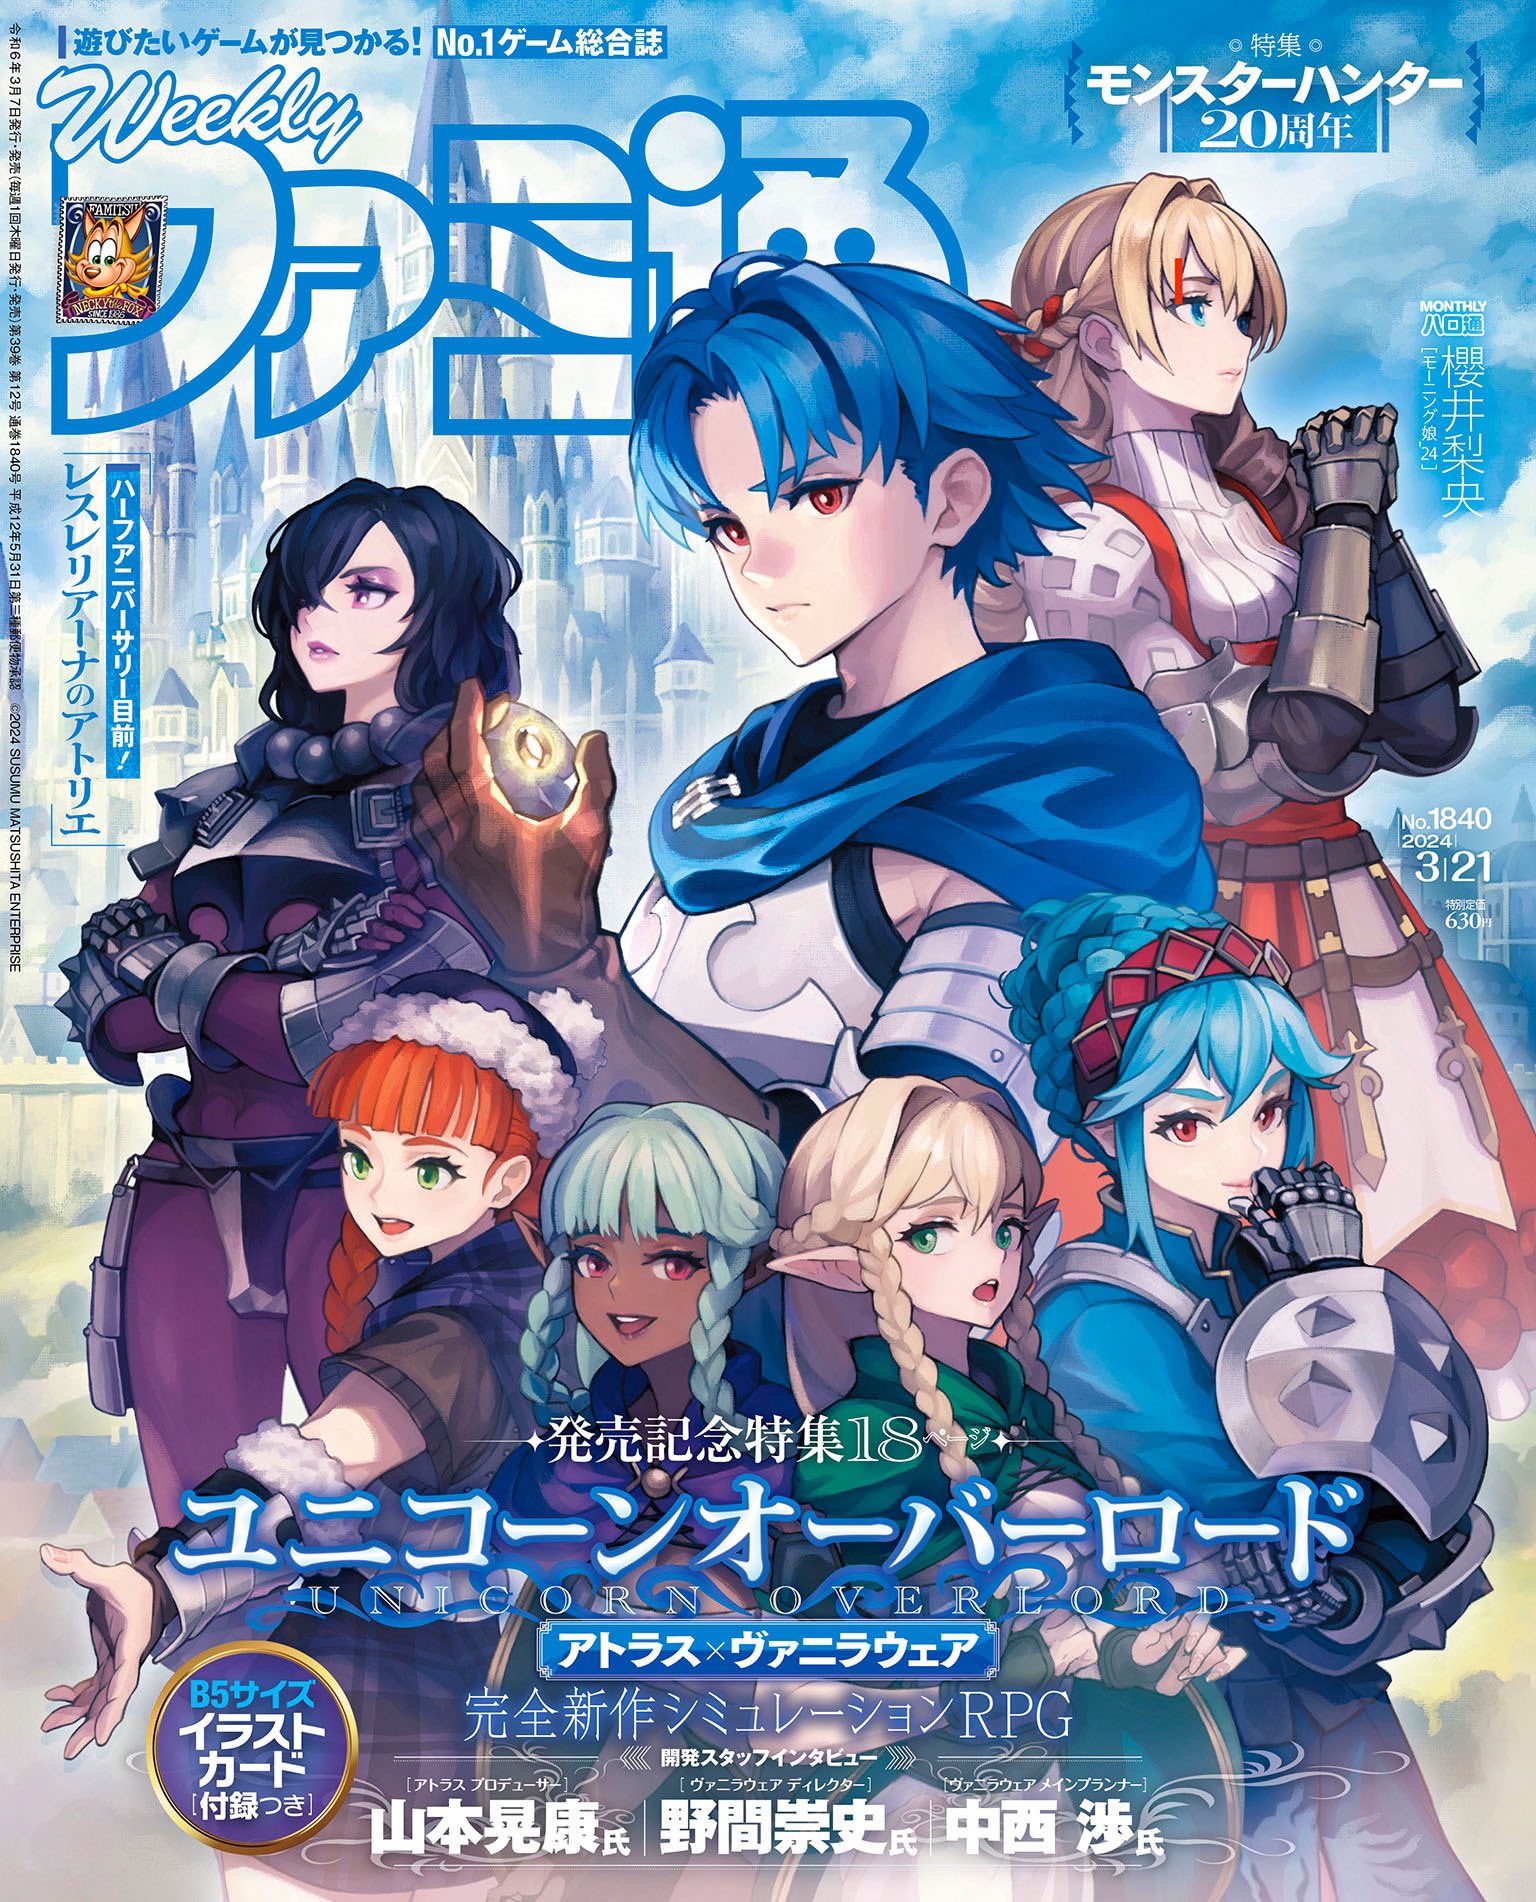 《聖獸之王》登上本周Fami通雜誌封面 遊戲即將發售